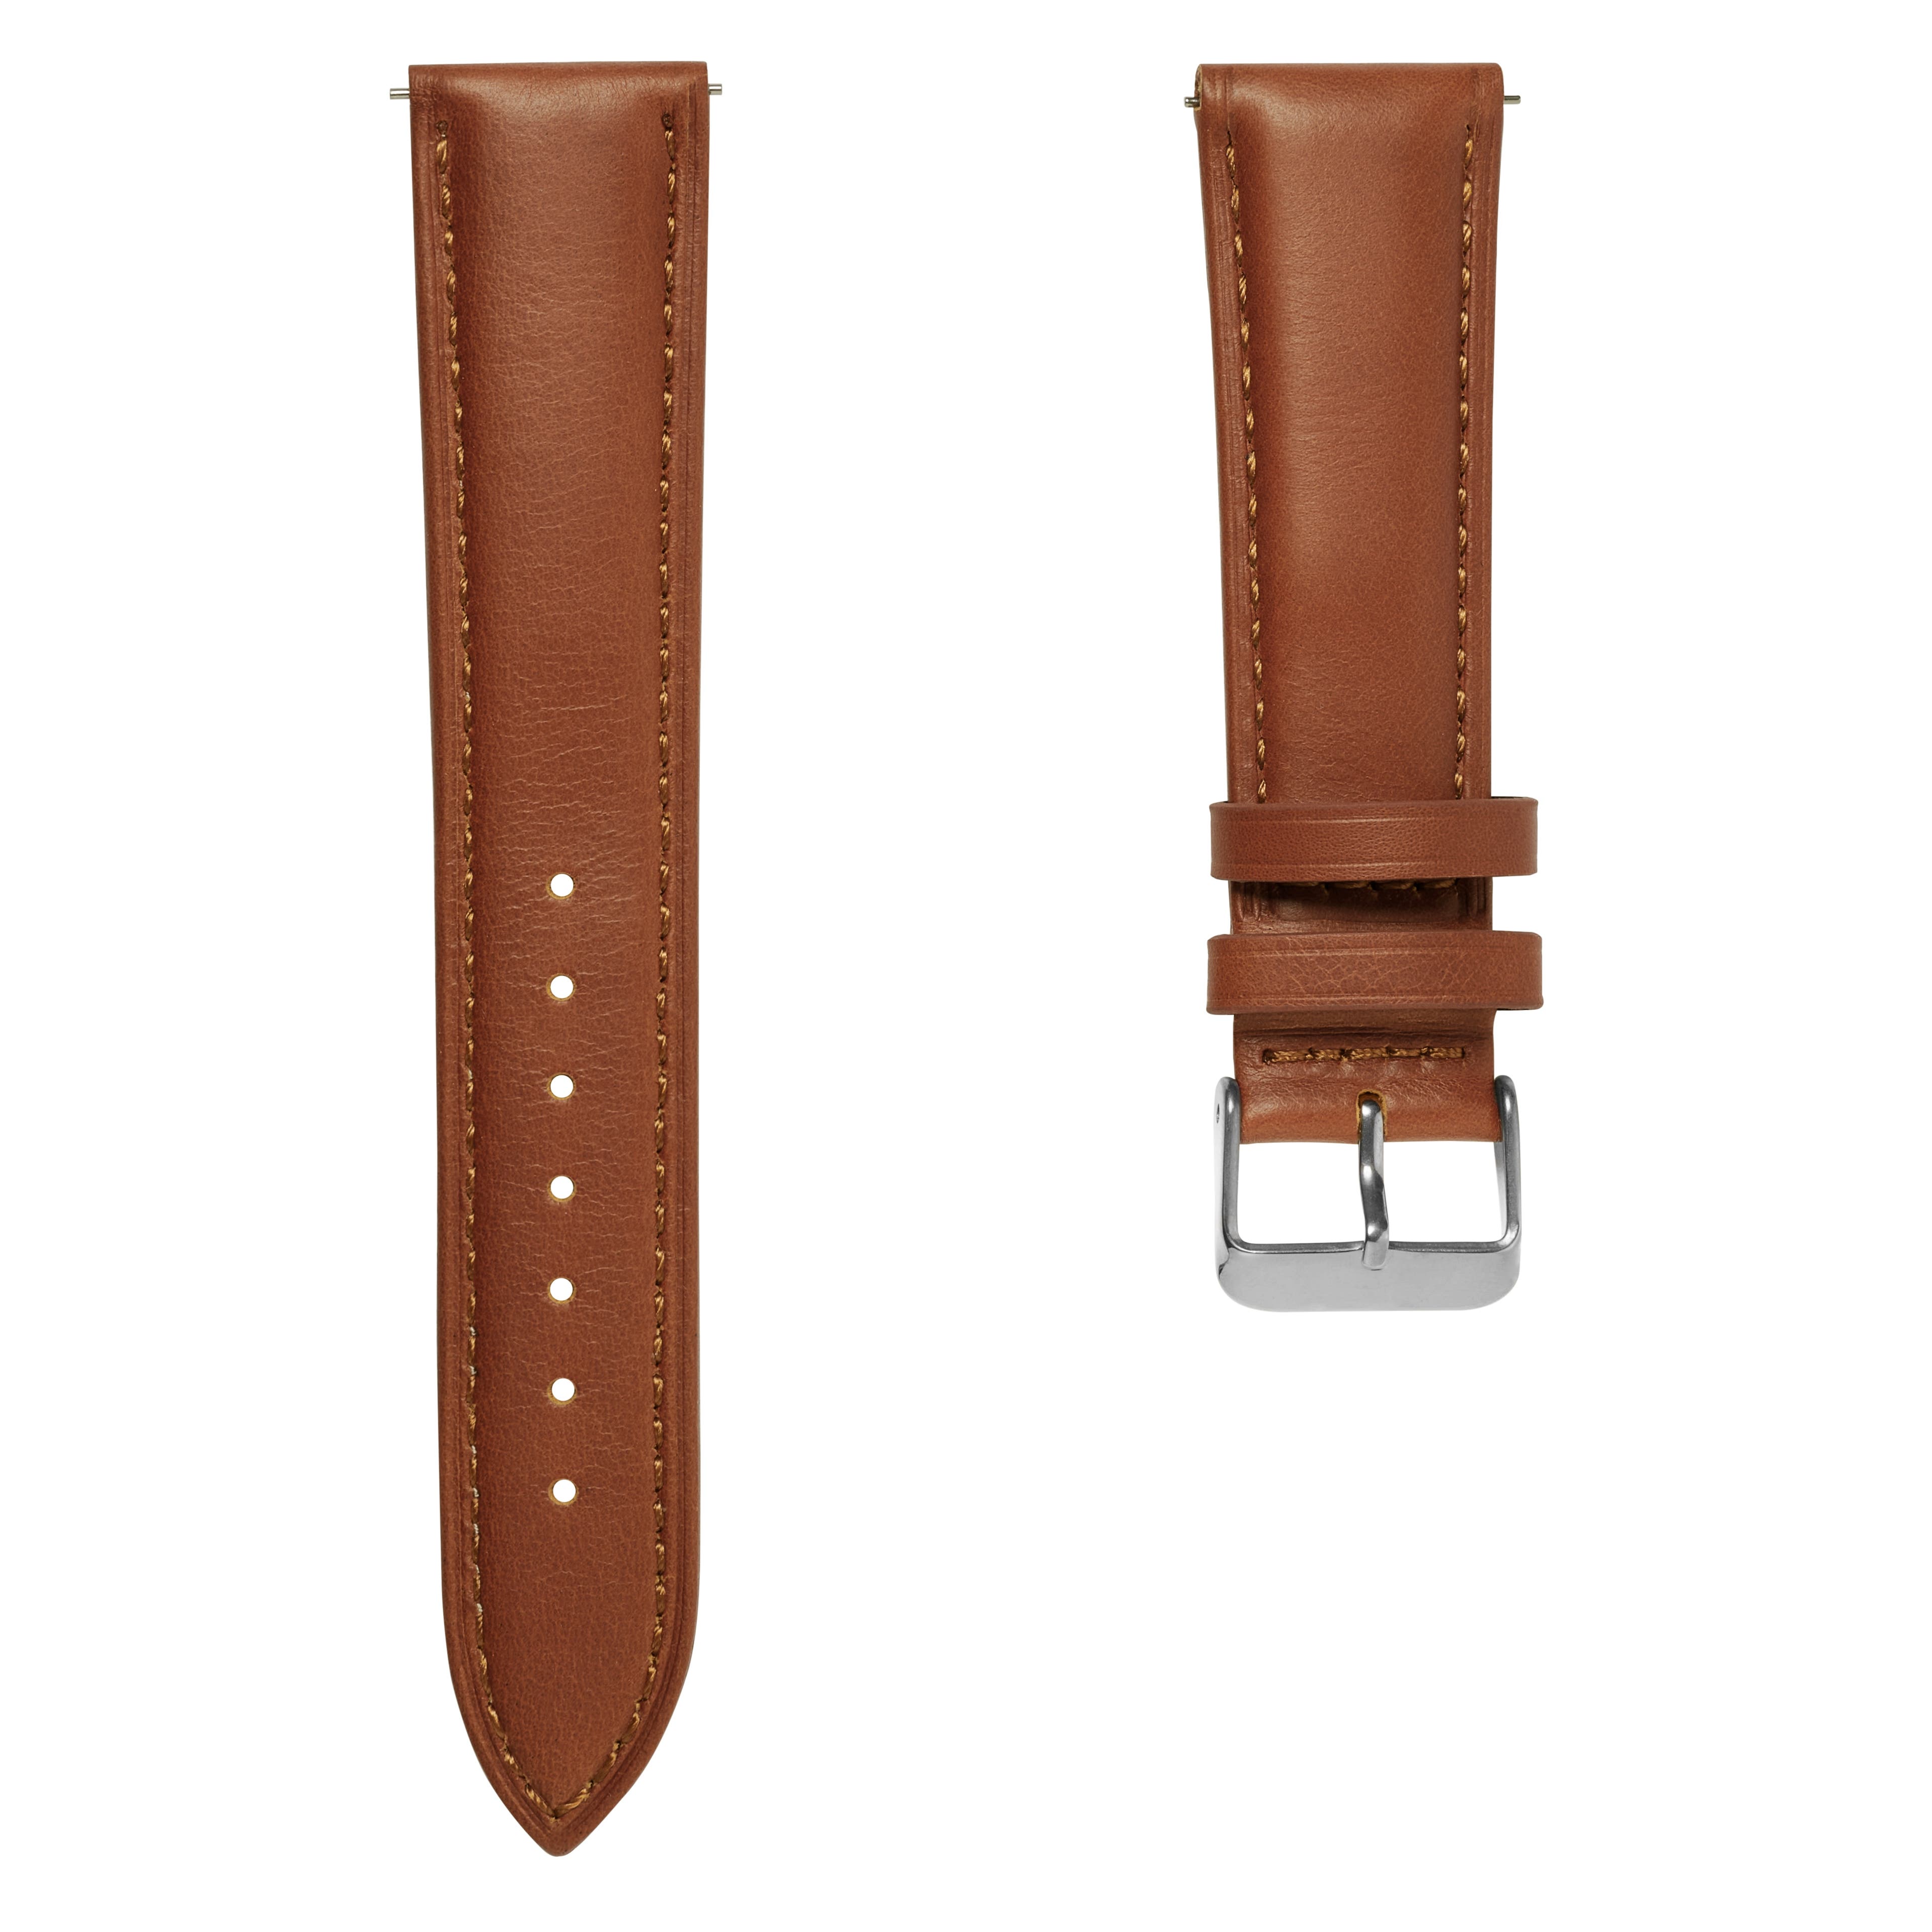 Bracelet de montre en cuir brun havane 18 mm avec boucle argentée - Attache rapide